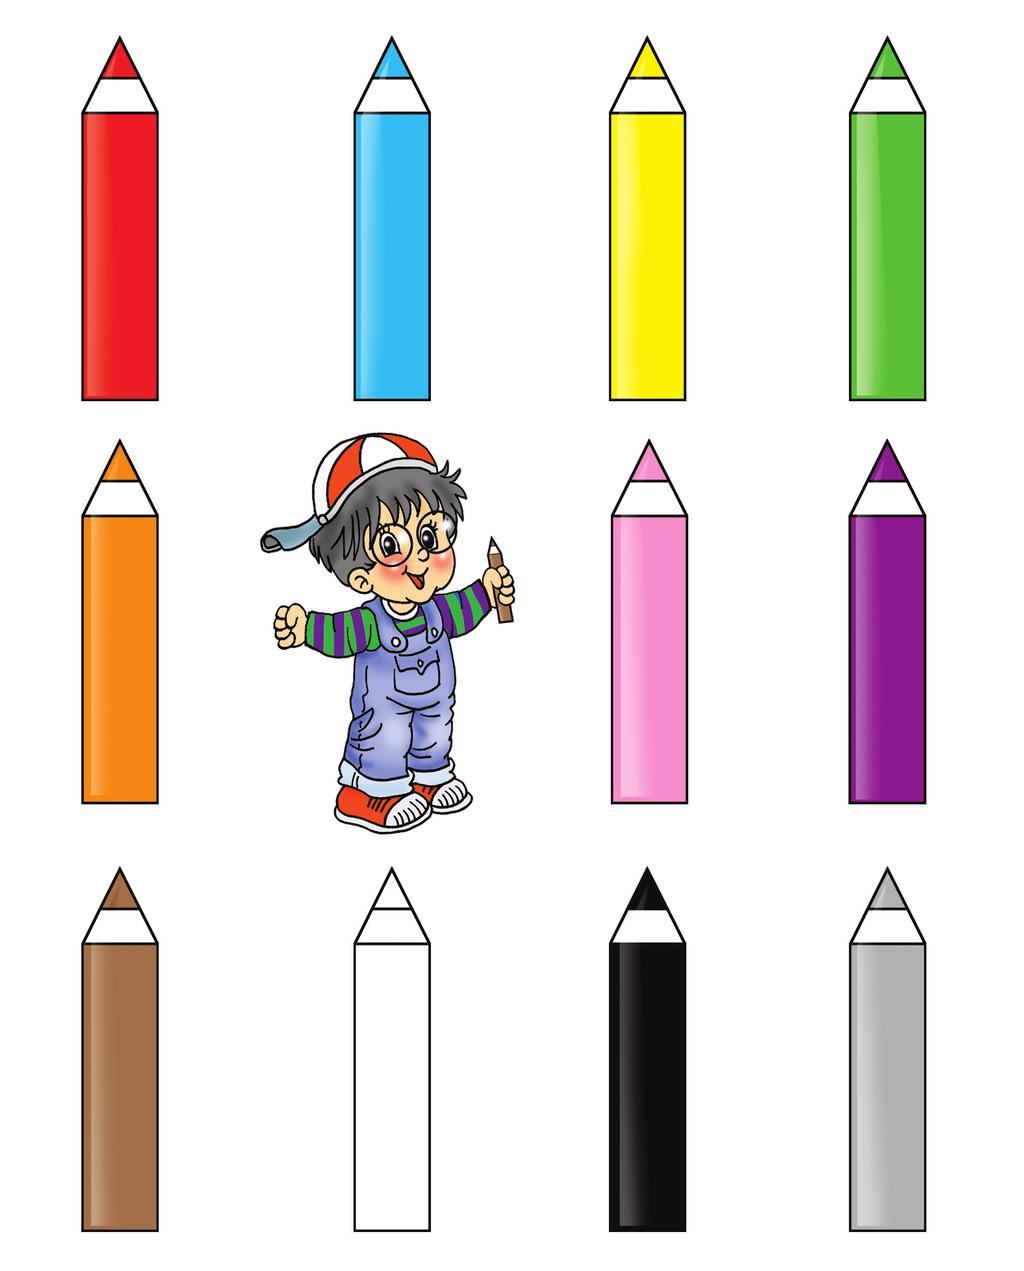 RENKLER Merakl Bilgin in kalemlerinin renklerini söyleyelim.